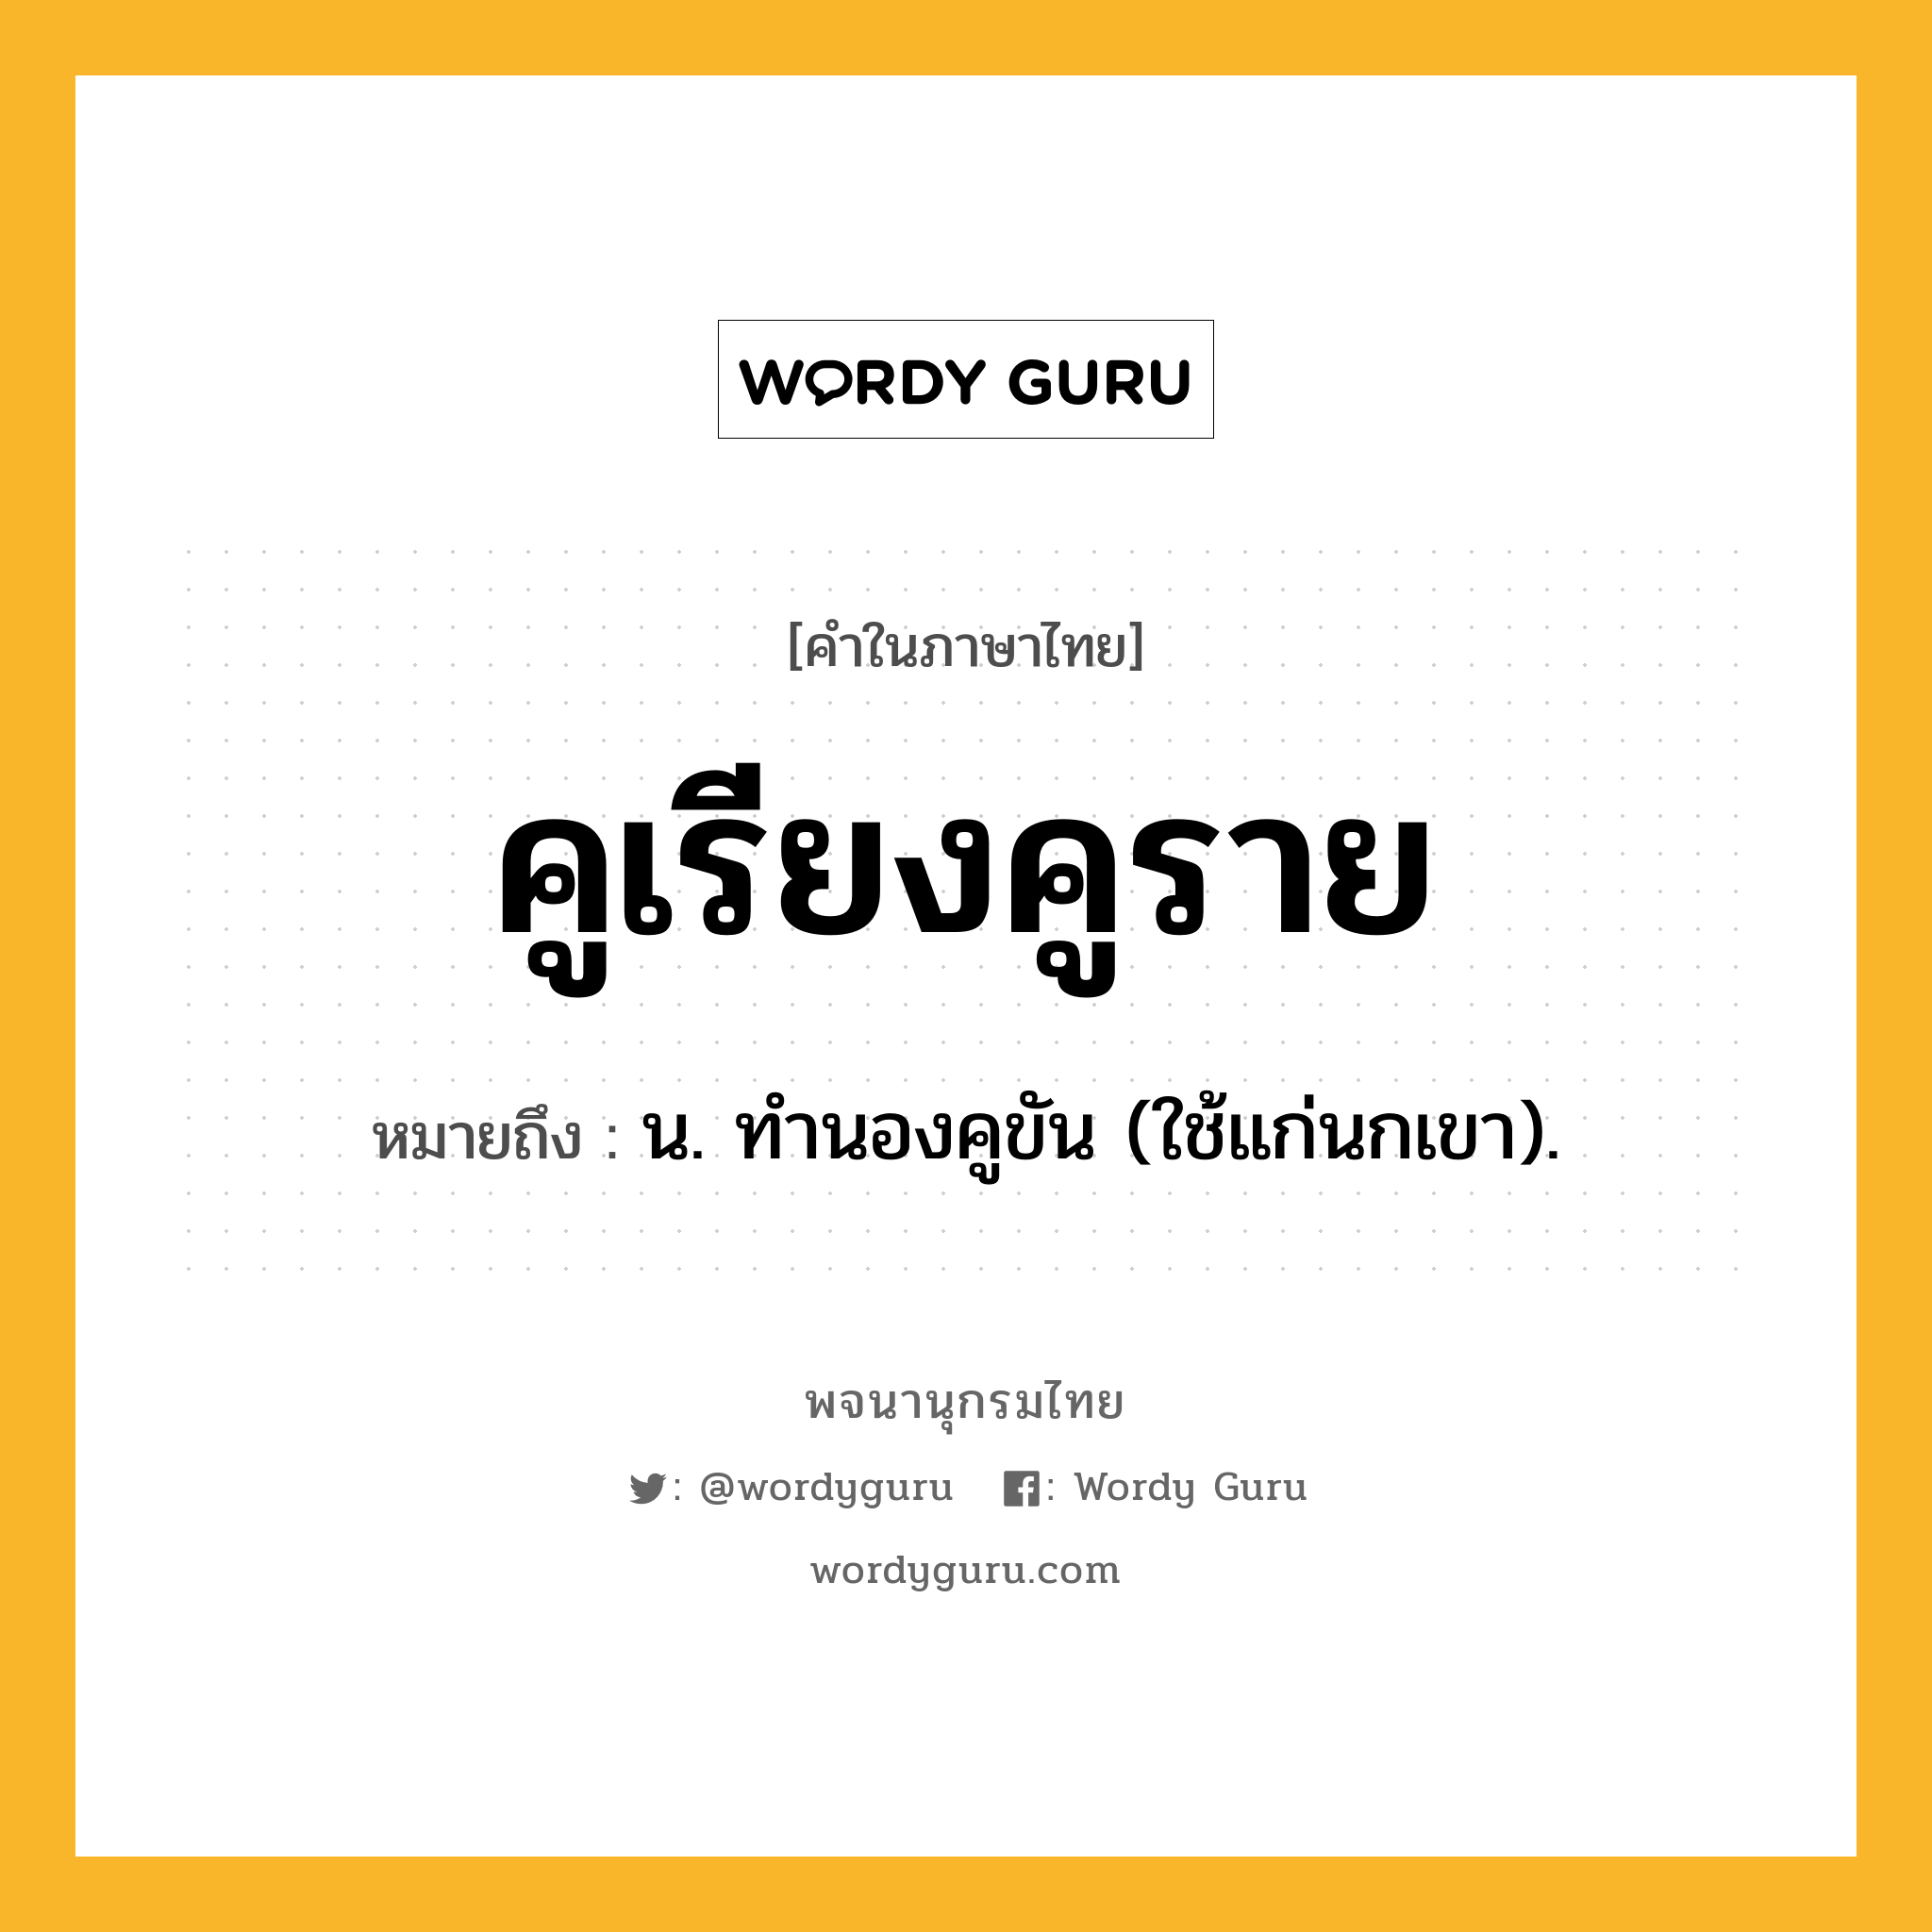 คูเรียงคูราย หมายถึงอะไร?, คำในภาษาไทย คูเรียงคูราย หมายถึง น. ทํานองคูขัน (ใช้แก่นกเขา).